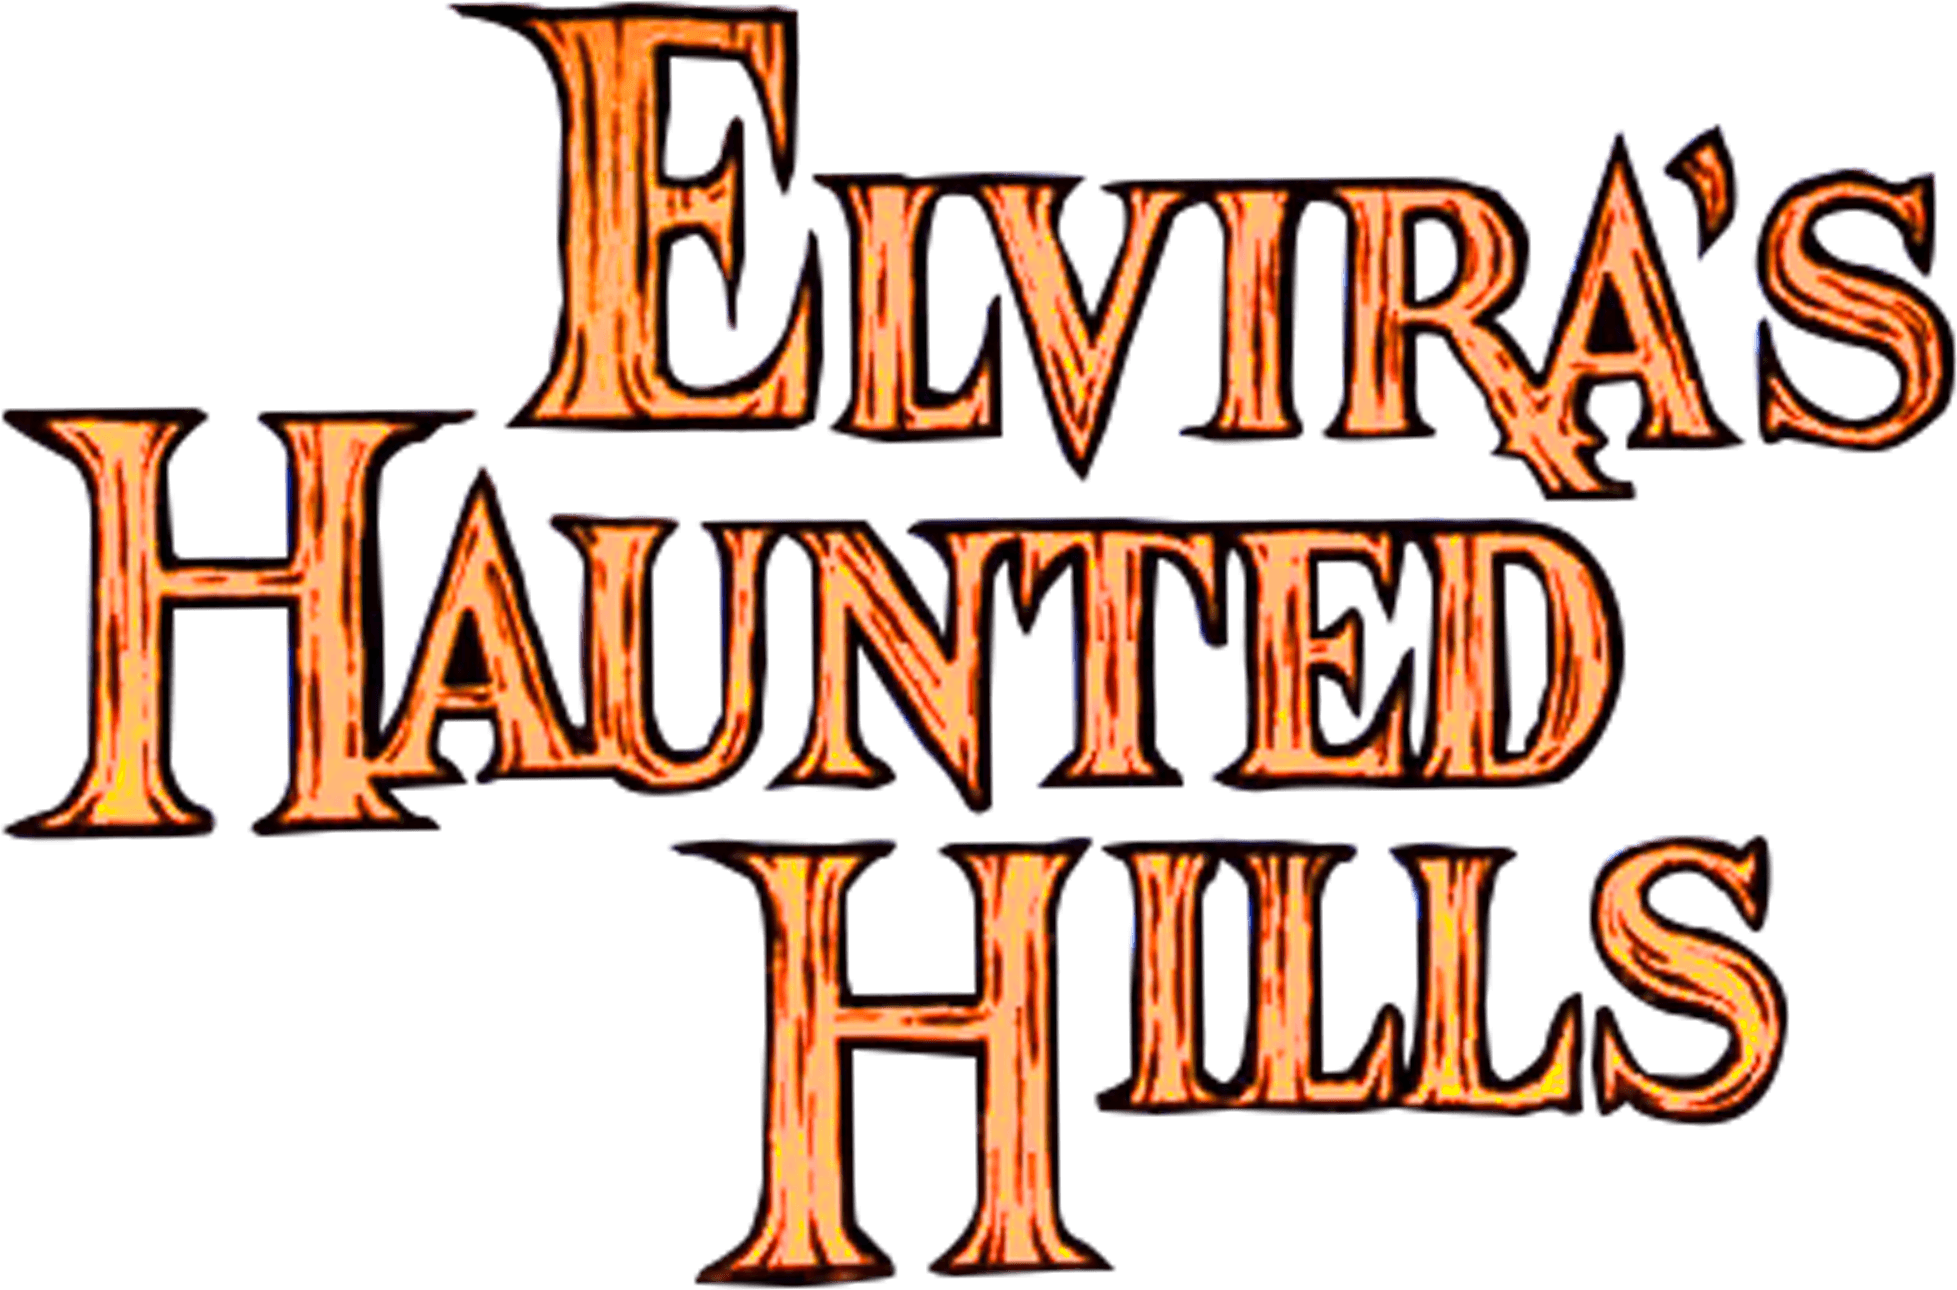 Elvira's Haunted Hills logo